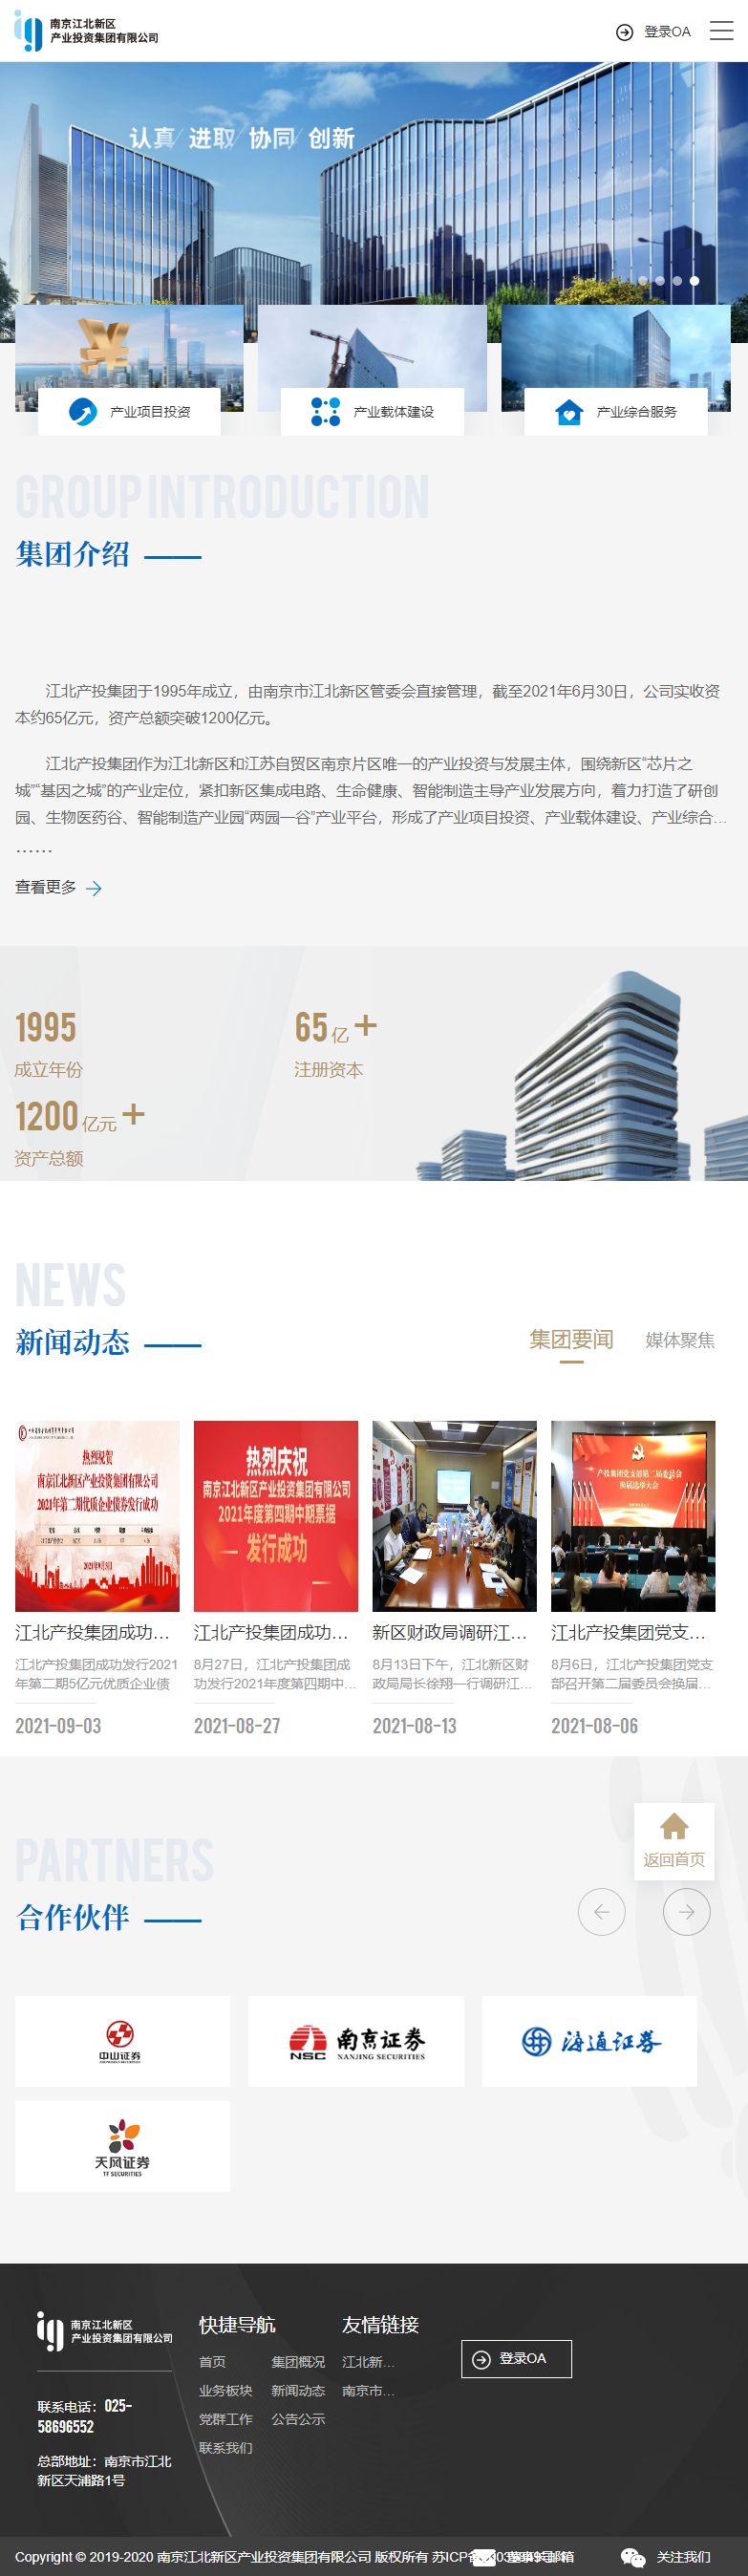 南京江北新区产业投资集团有限公司网站案例